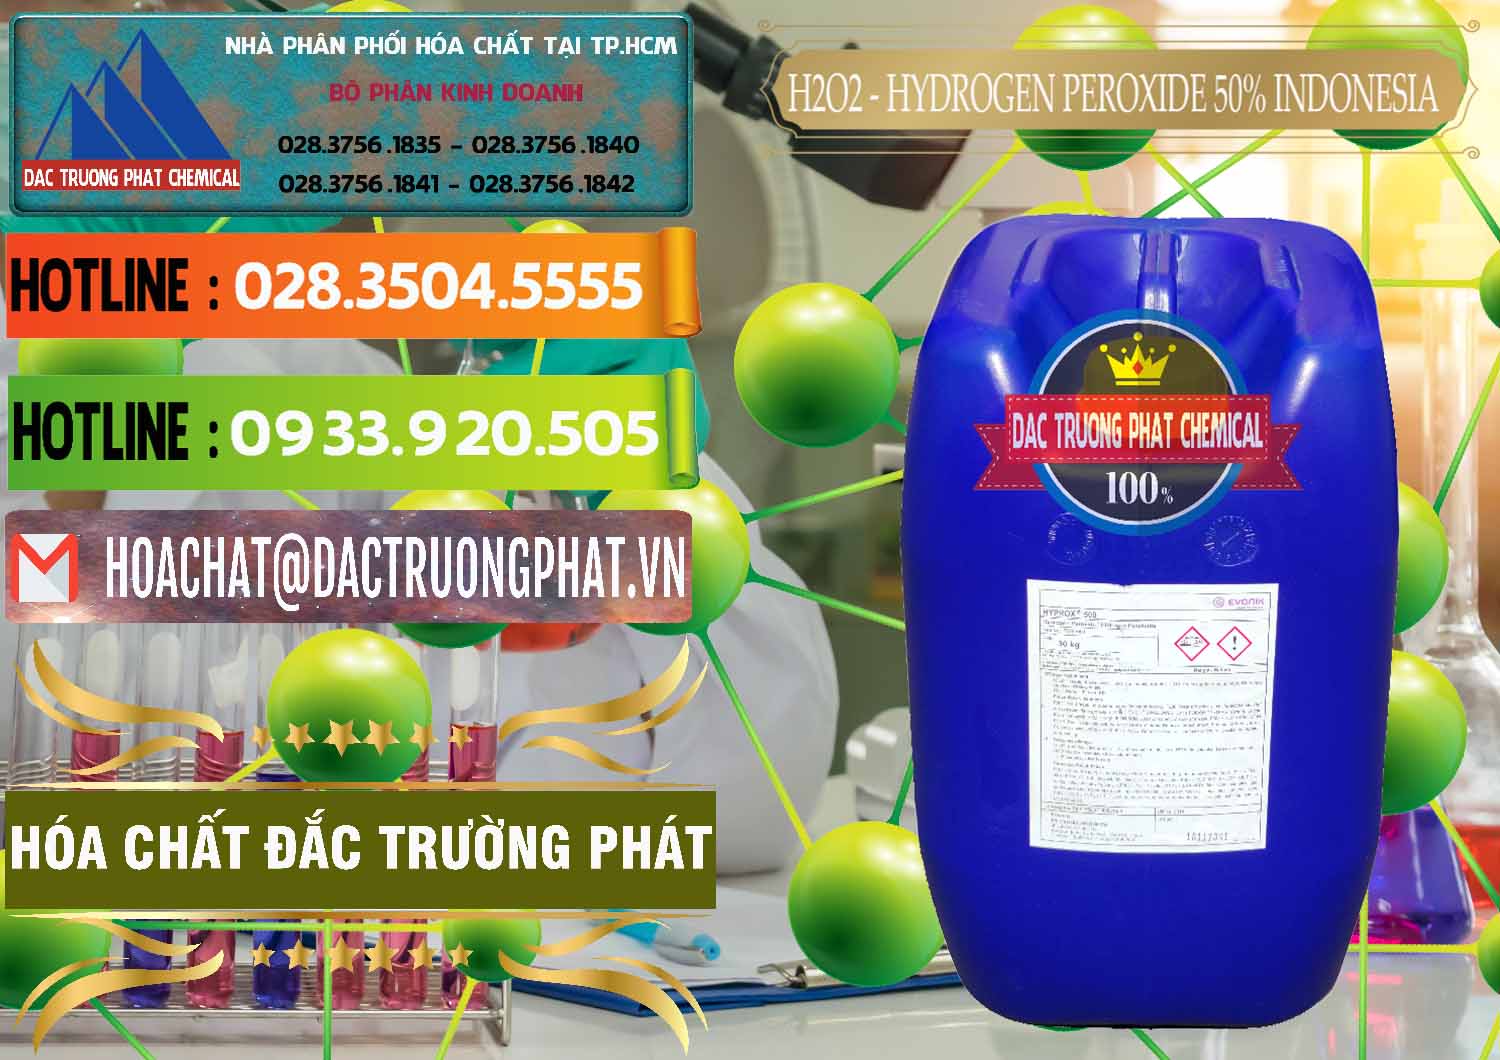 Nơi chuyên phân phối ( bán ) H2O2 - Hydrogen Peroxide 50% Evonik Indonesia - 0070 - Đơn vị chuyên cung cấp - kinh doanh hóa chất tại TP.HCM - cungcaphoachat.com.vn